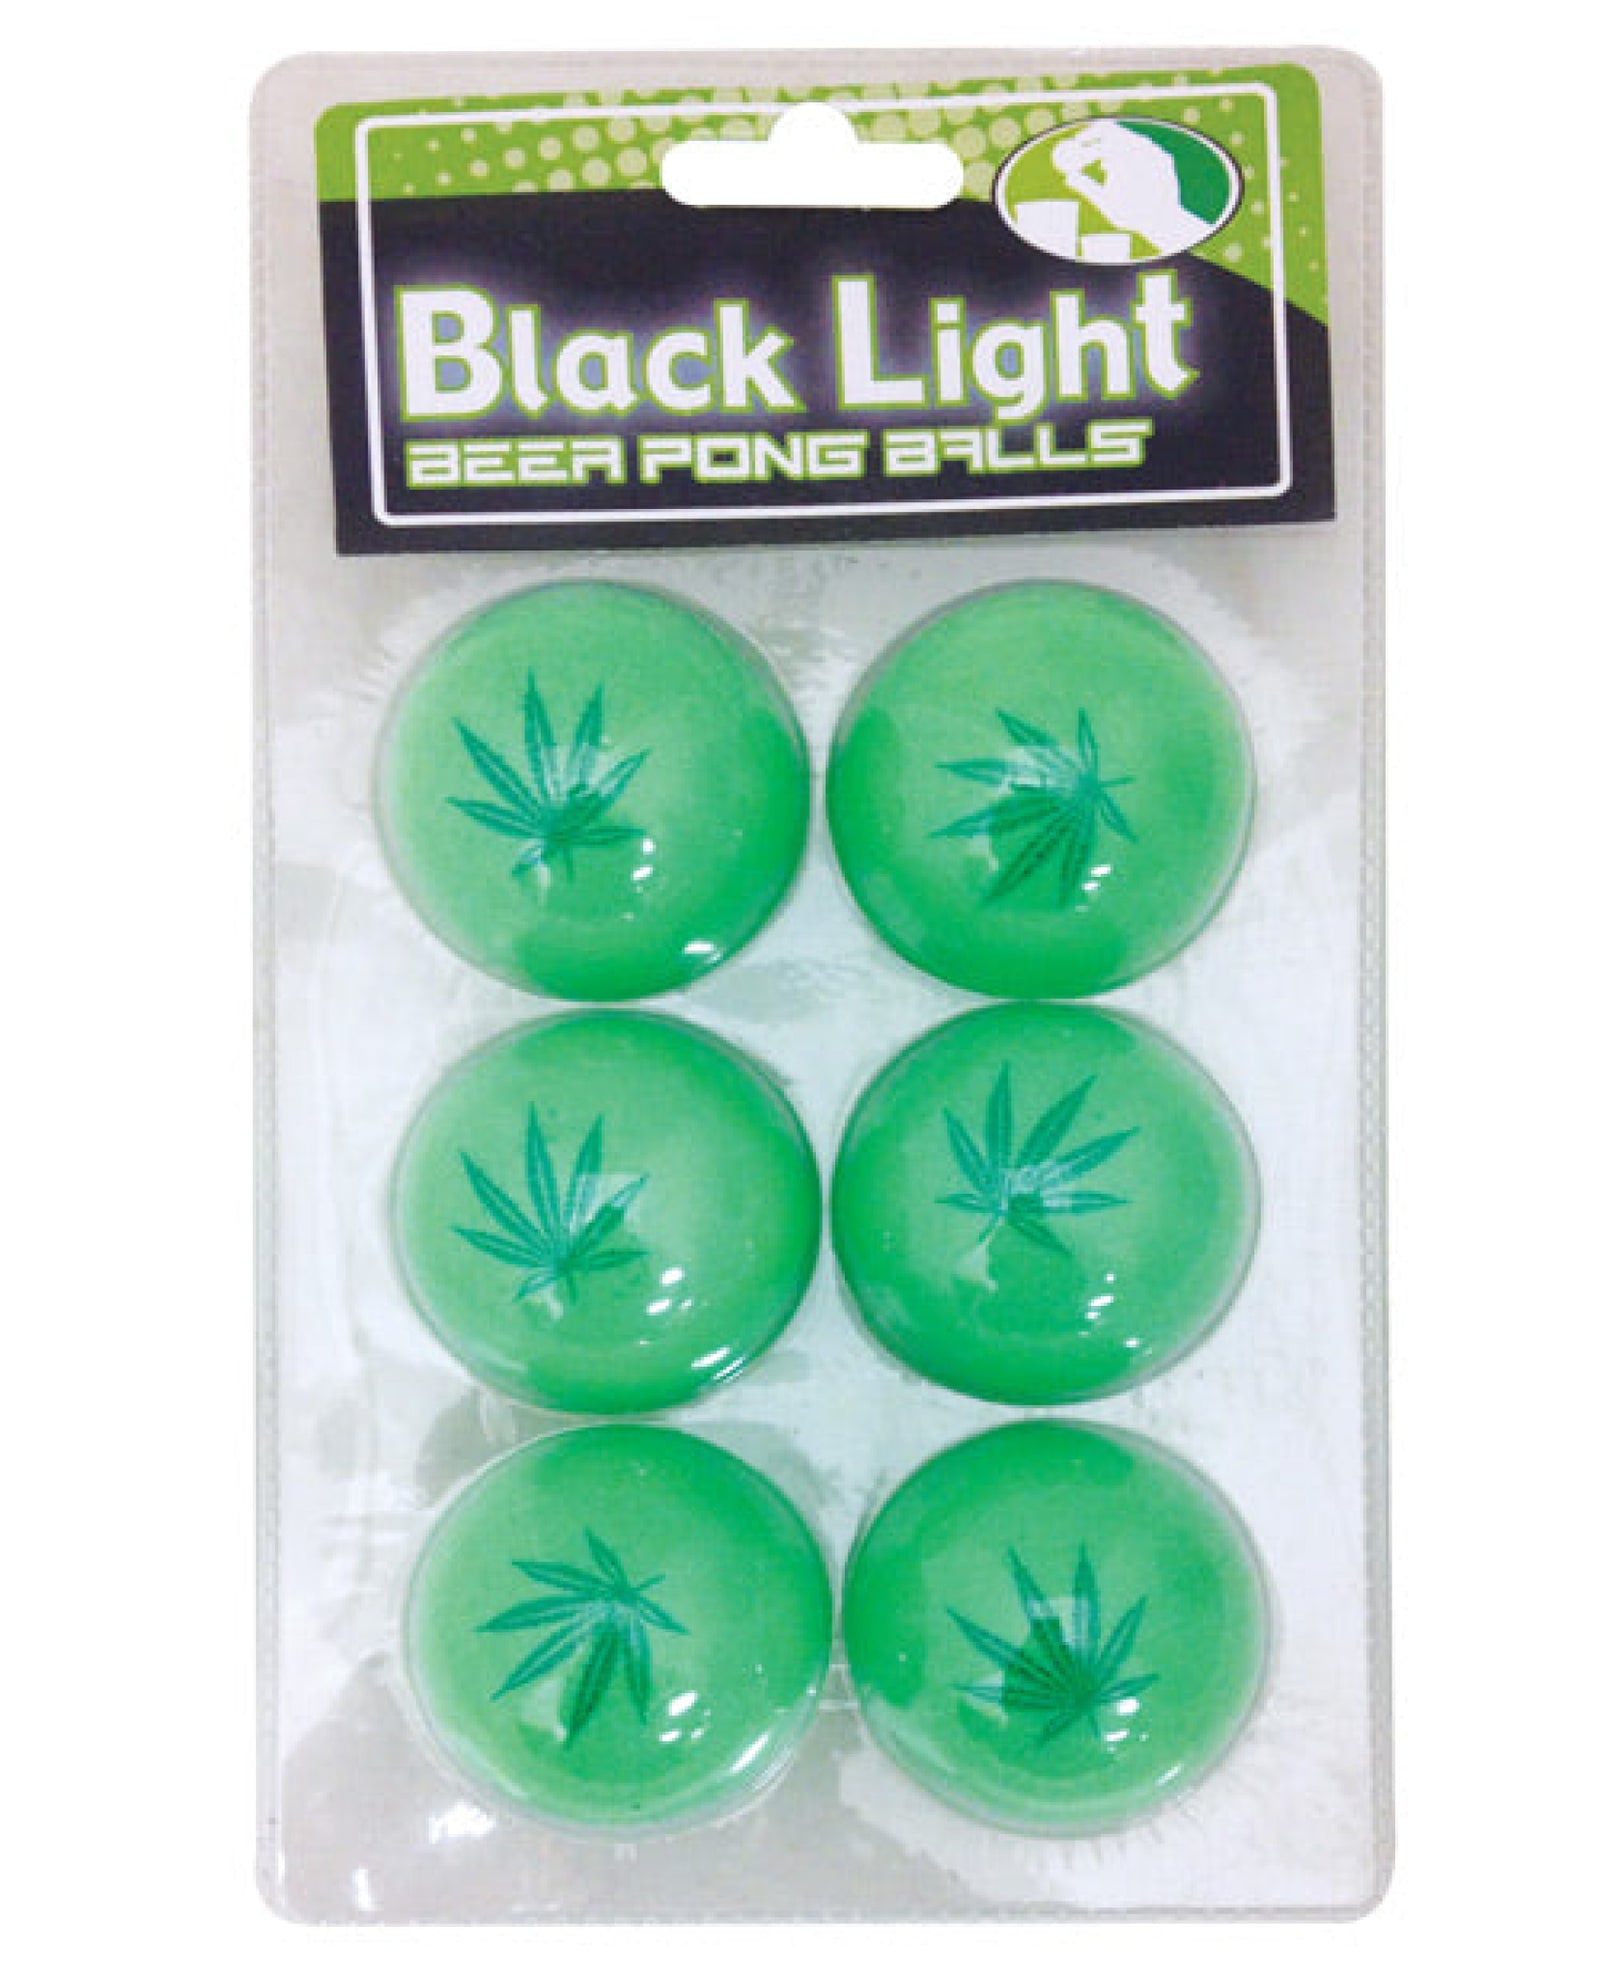 Pot Leaf Black Light Pong Balls - Green Pack Of 6 Island Dogs